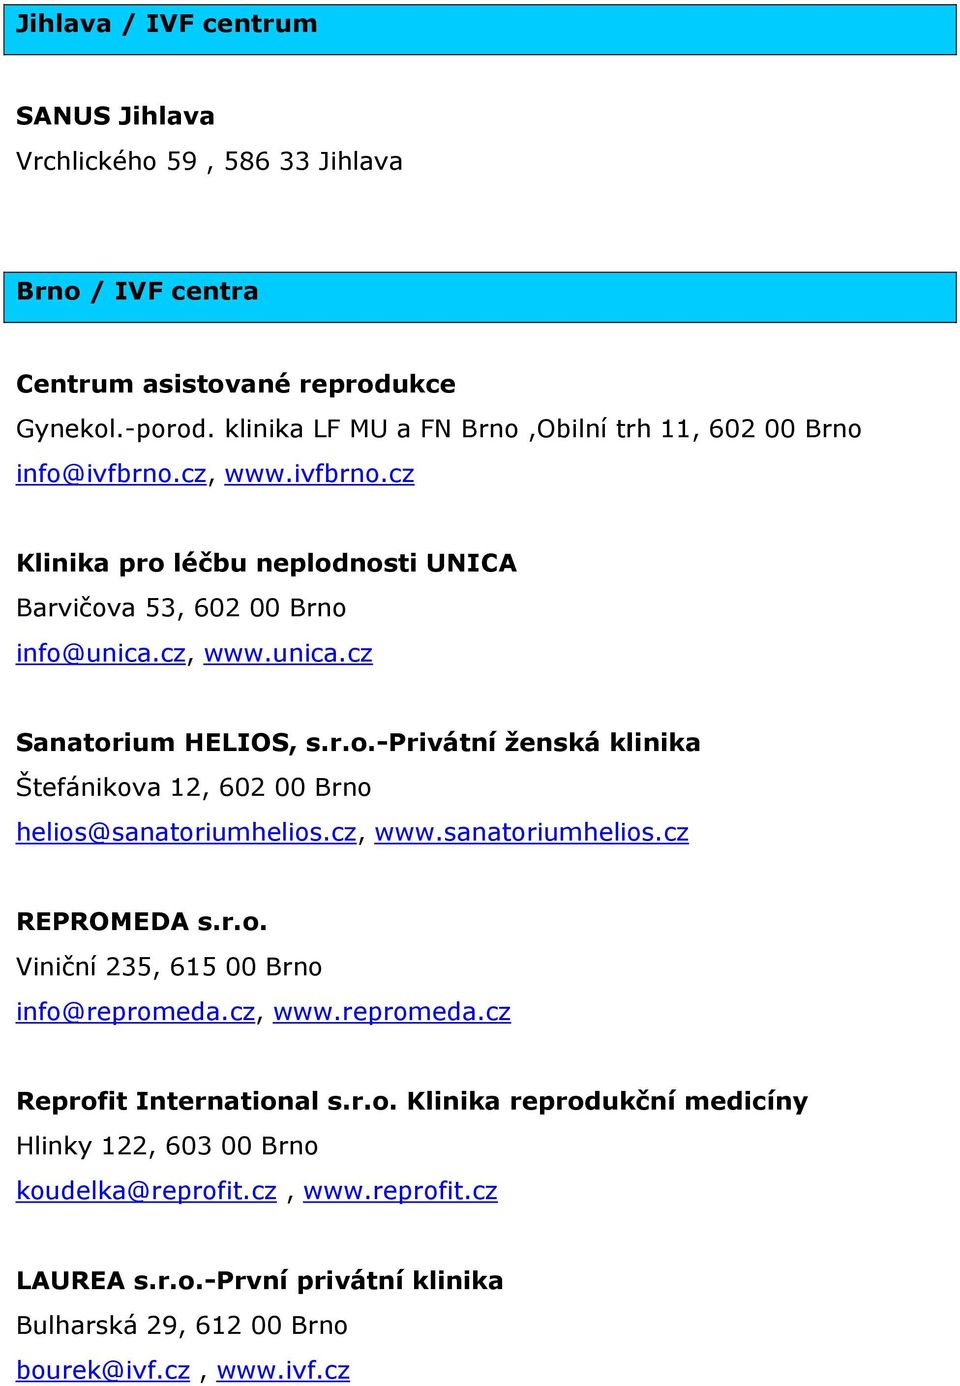 r.o.-privátní ženská klinika Štefánikova 12, 602 00 Brno helios@sanatoriumhelios.cz, www.sanatoriumhelios.cz REPROMEDA s.r.o. Viniční 235, 615 00 Brno info@repromeda.